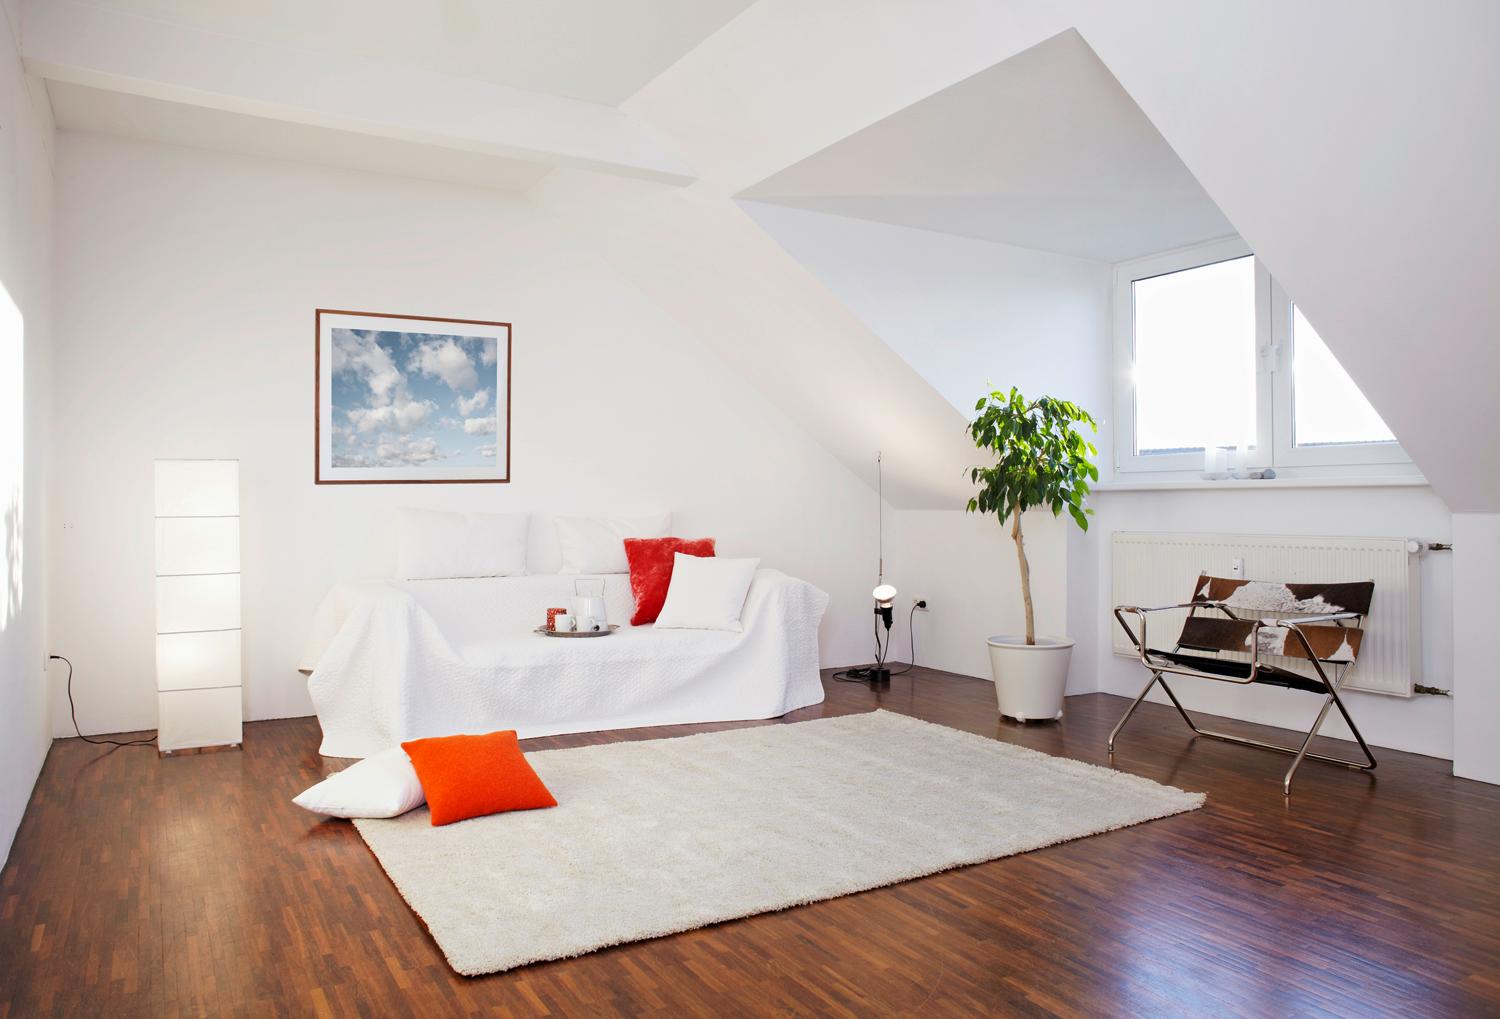 Wolkenhimmel #dachschräge #teppich #stehlampe #sitzbank #sofakissen #sofa ©©www.olaftiedje.de